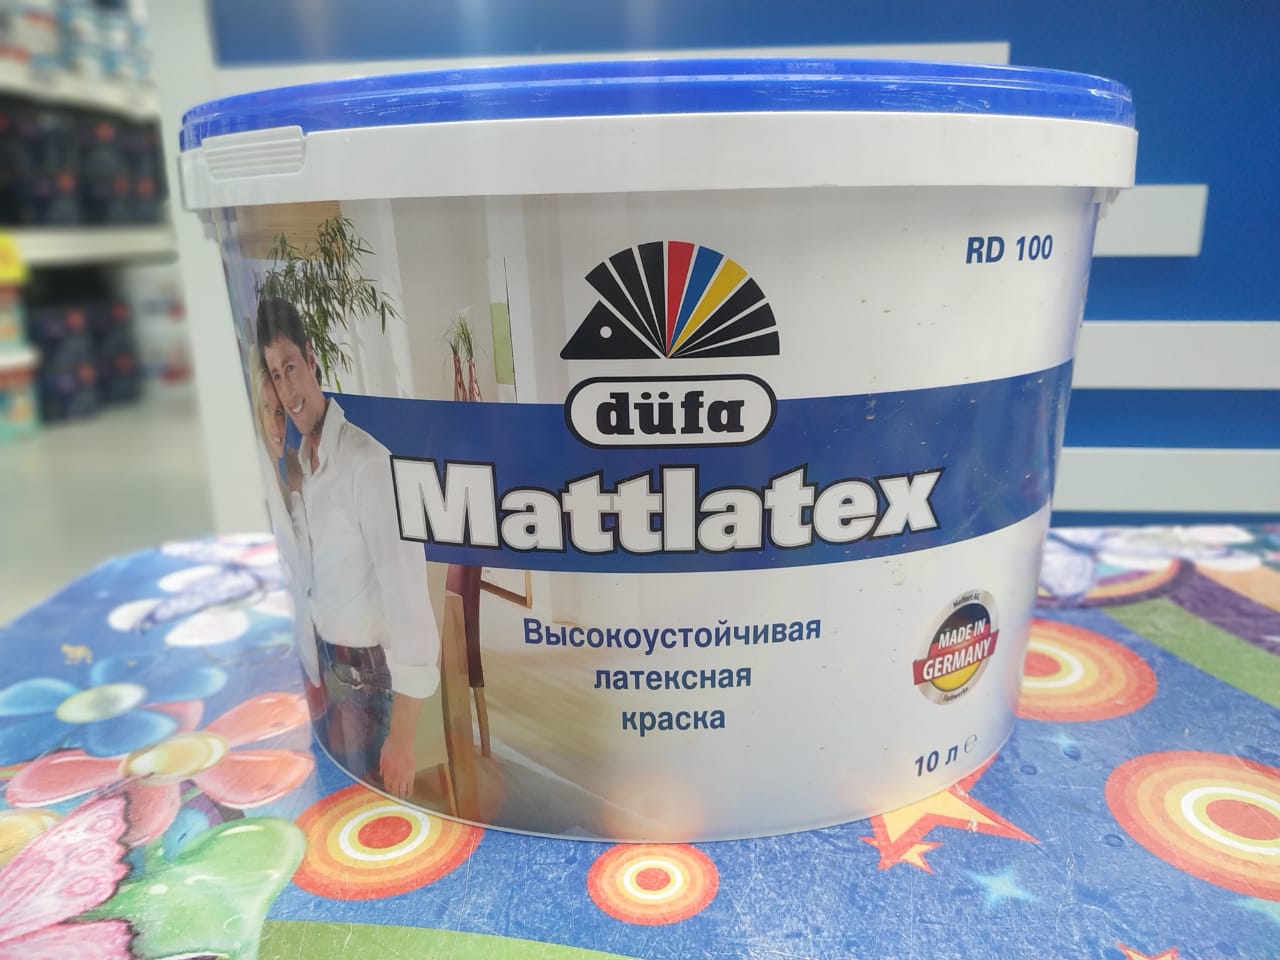 Mattlatex Dufa - латексная водостойкая краска для использования внутри помещений